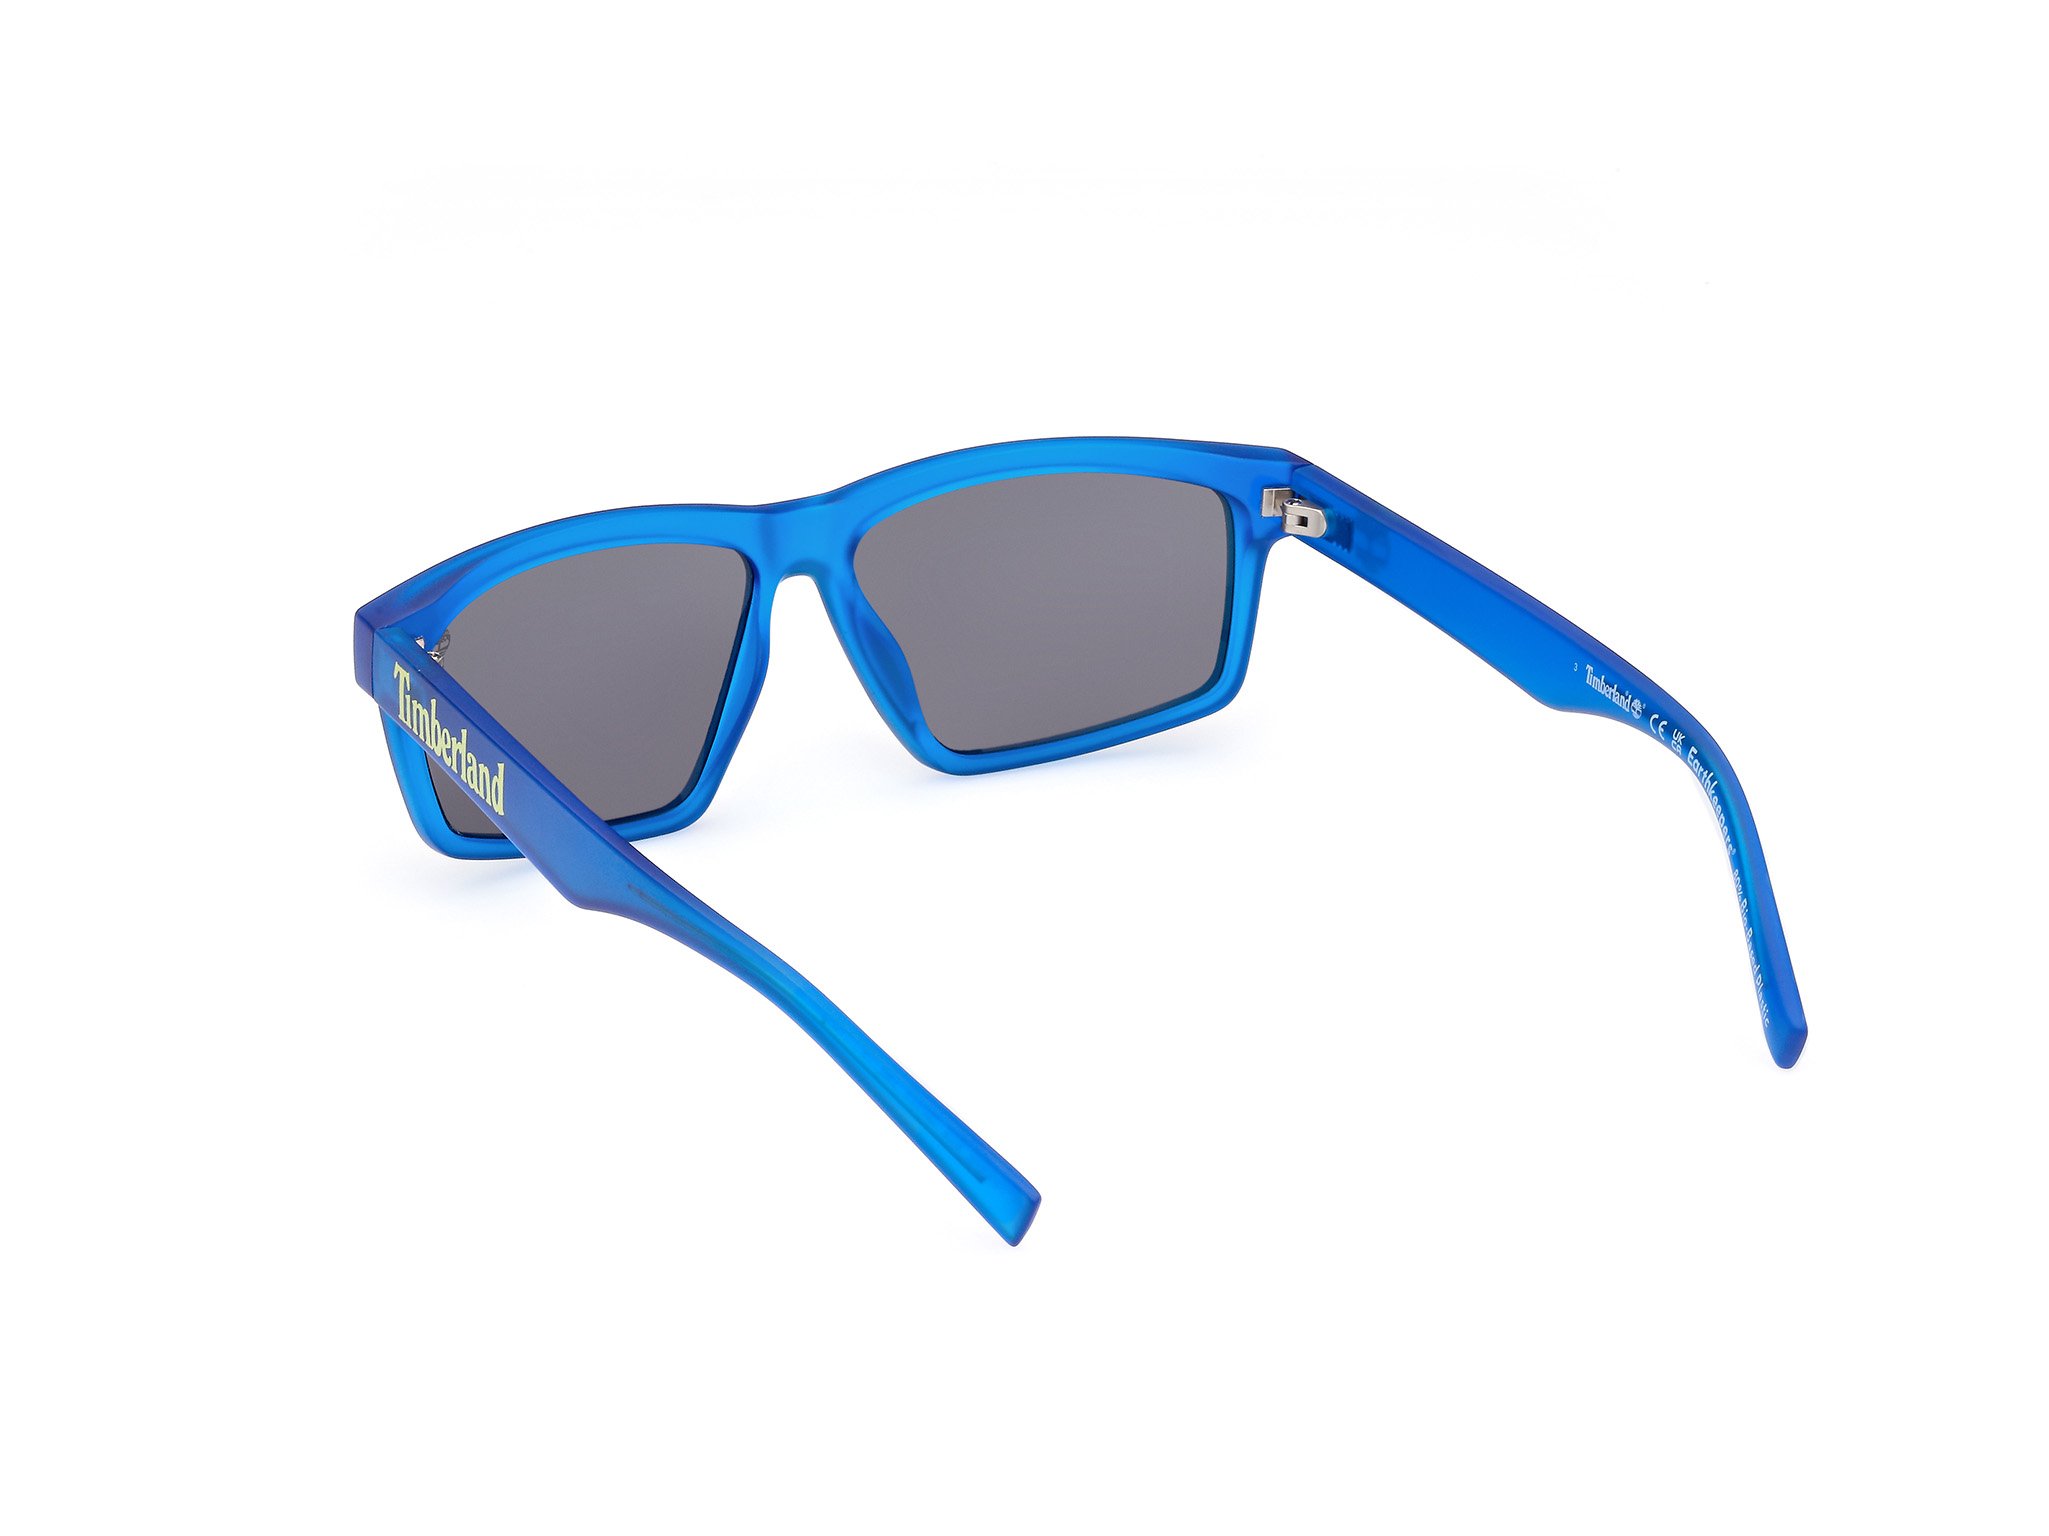 Das Bild zeigt die Sonnenbrille TB9319 47H von der Marke Timberland in transparent blau